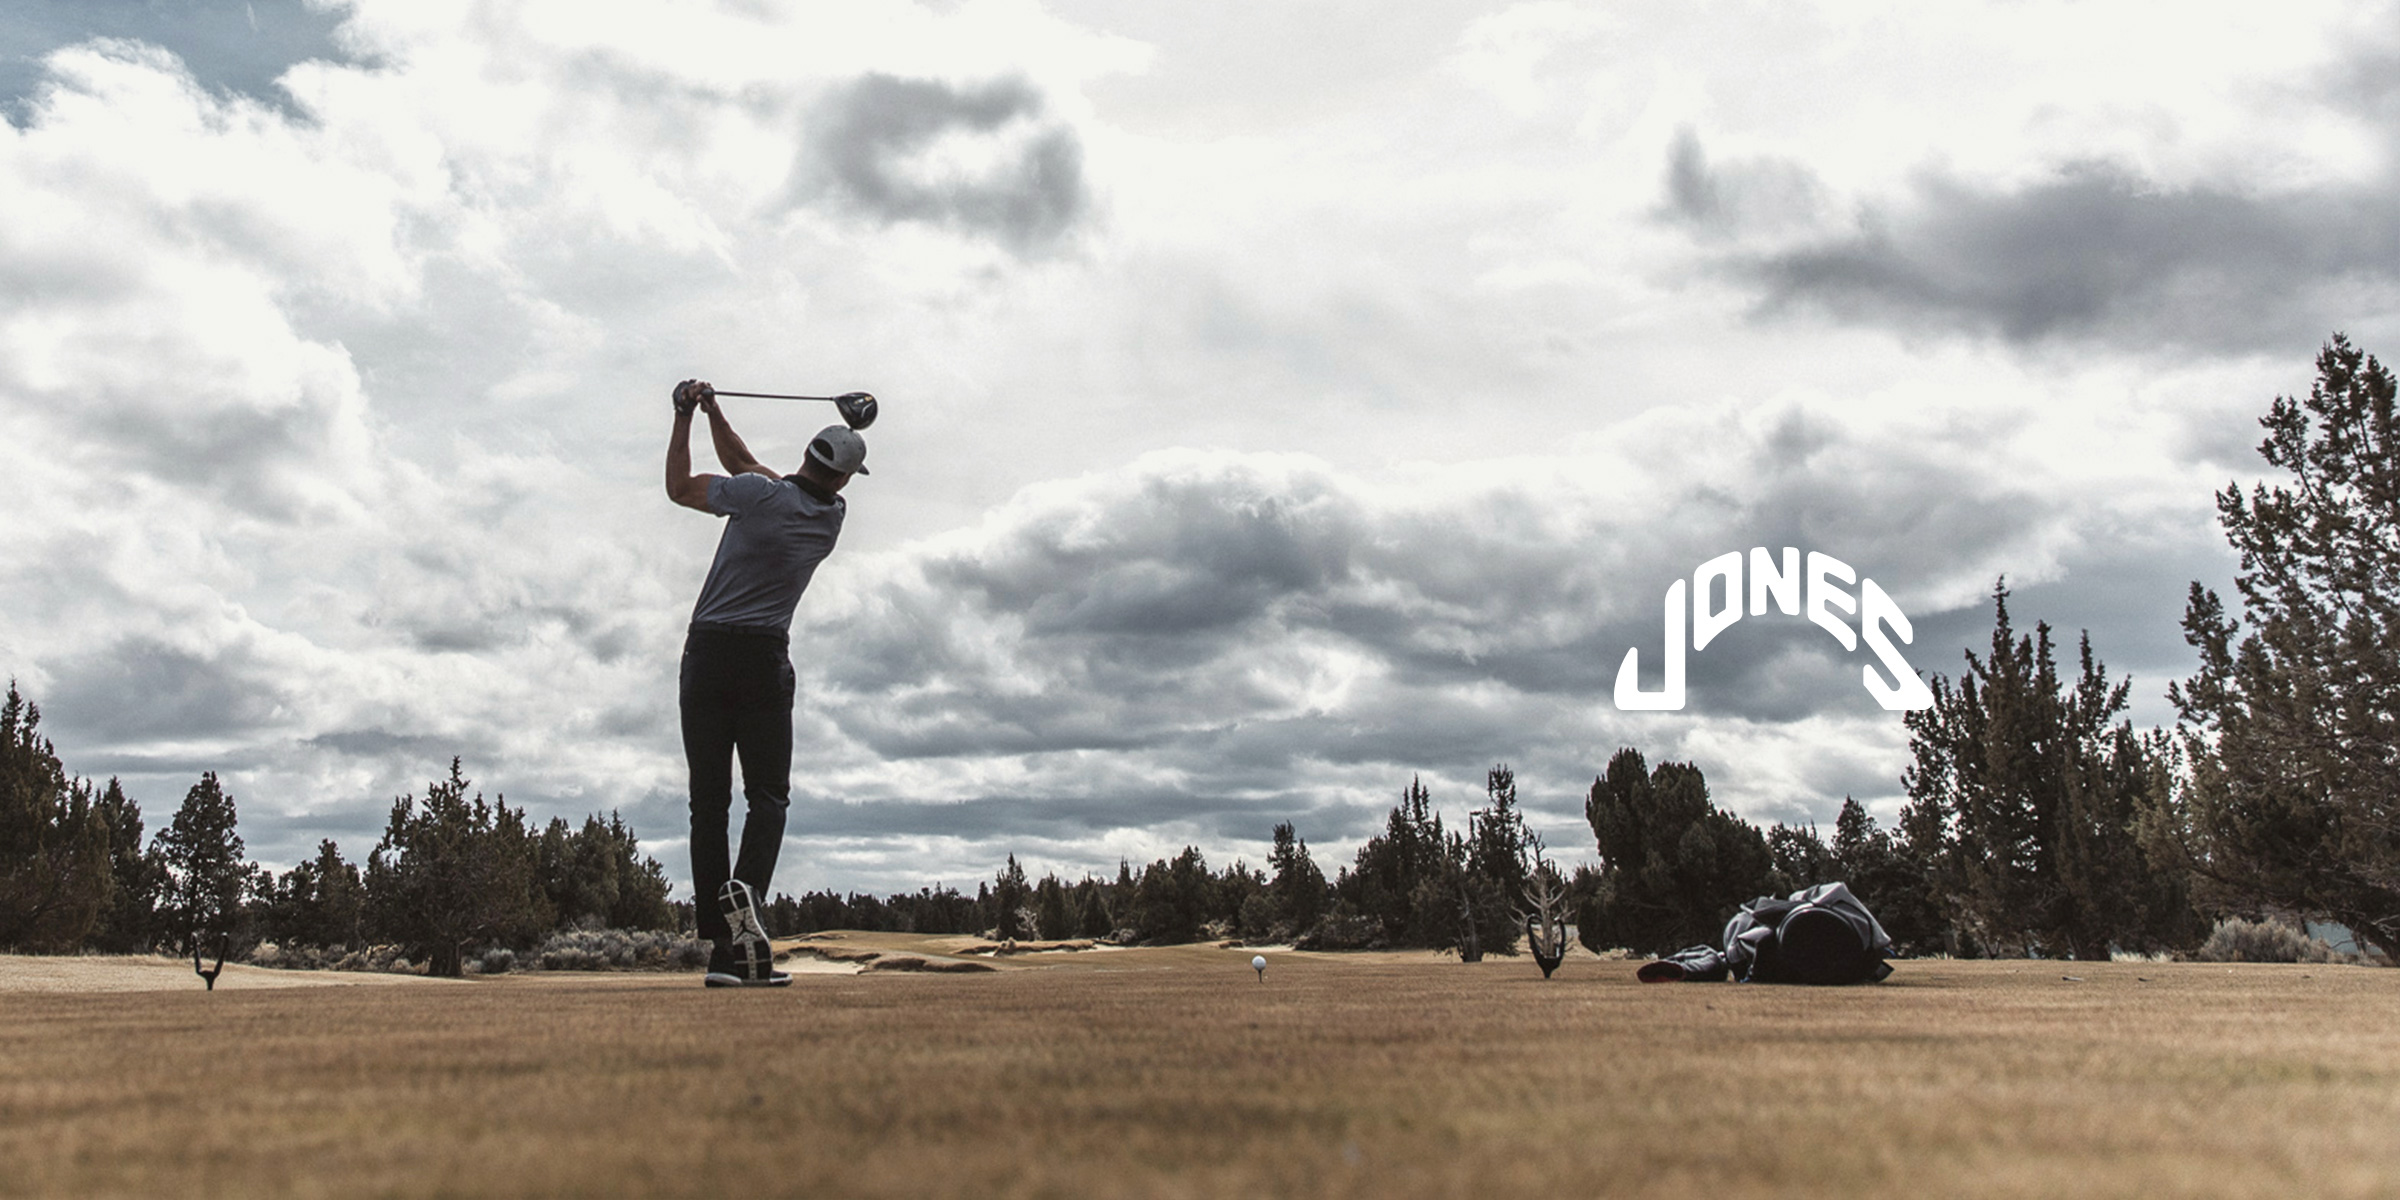 Shop JONES - JONES Sports 日本総輸入販売元 | ゴルフキャディバッグ